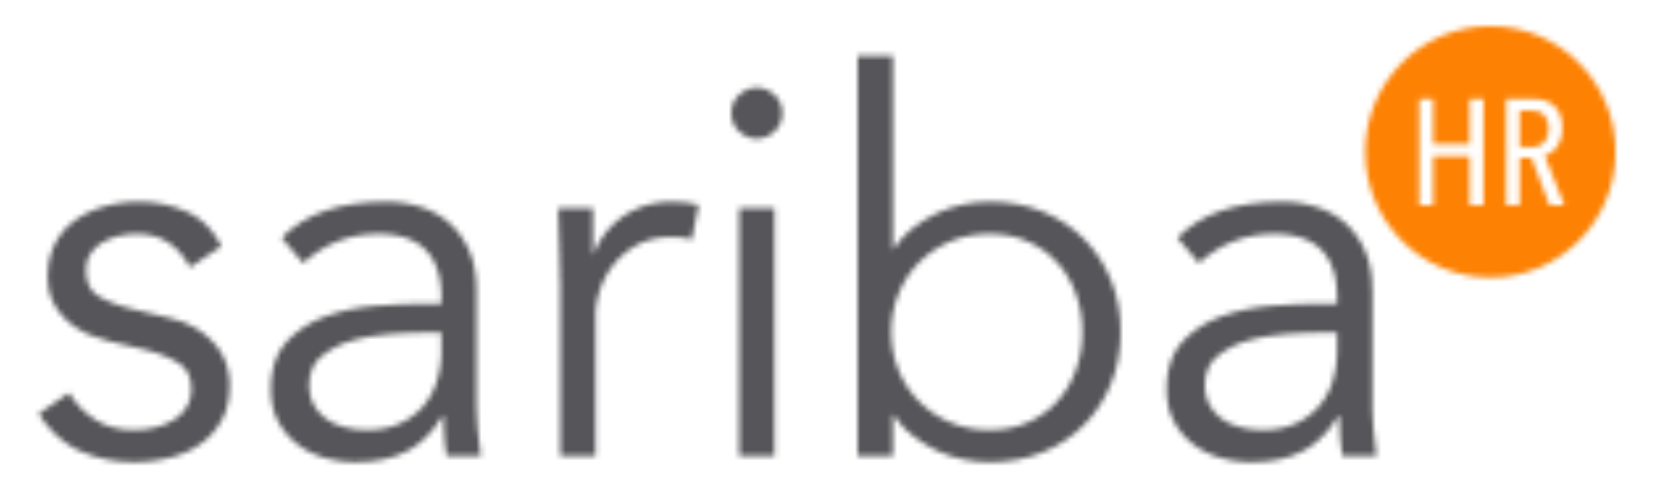 Sariba logo png